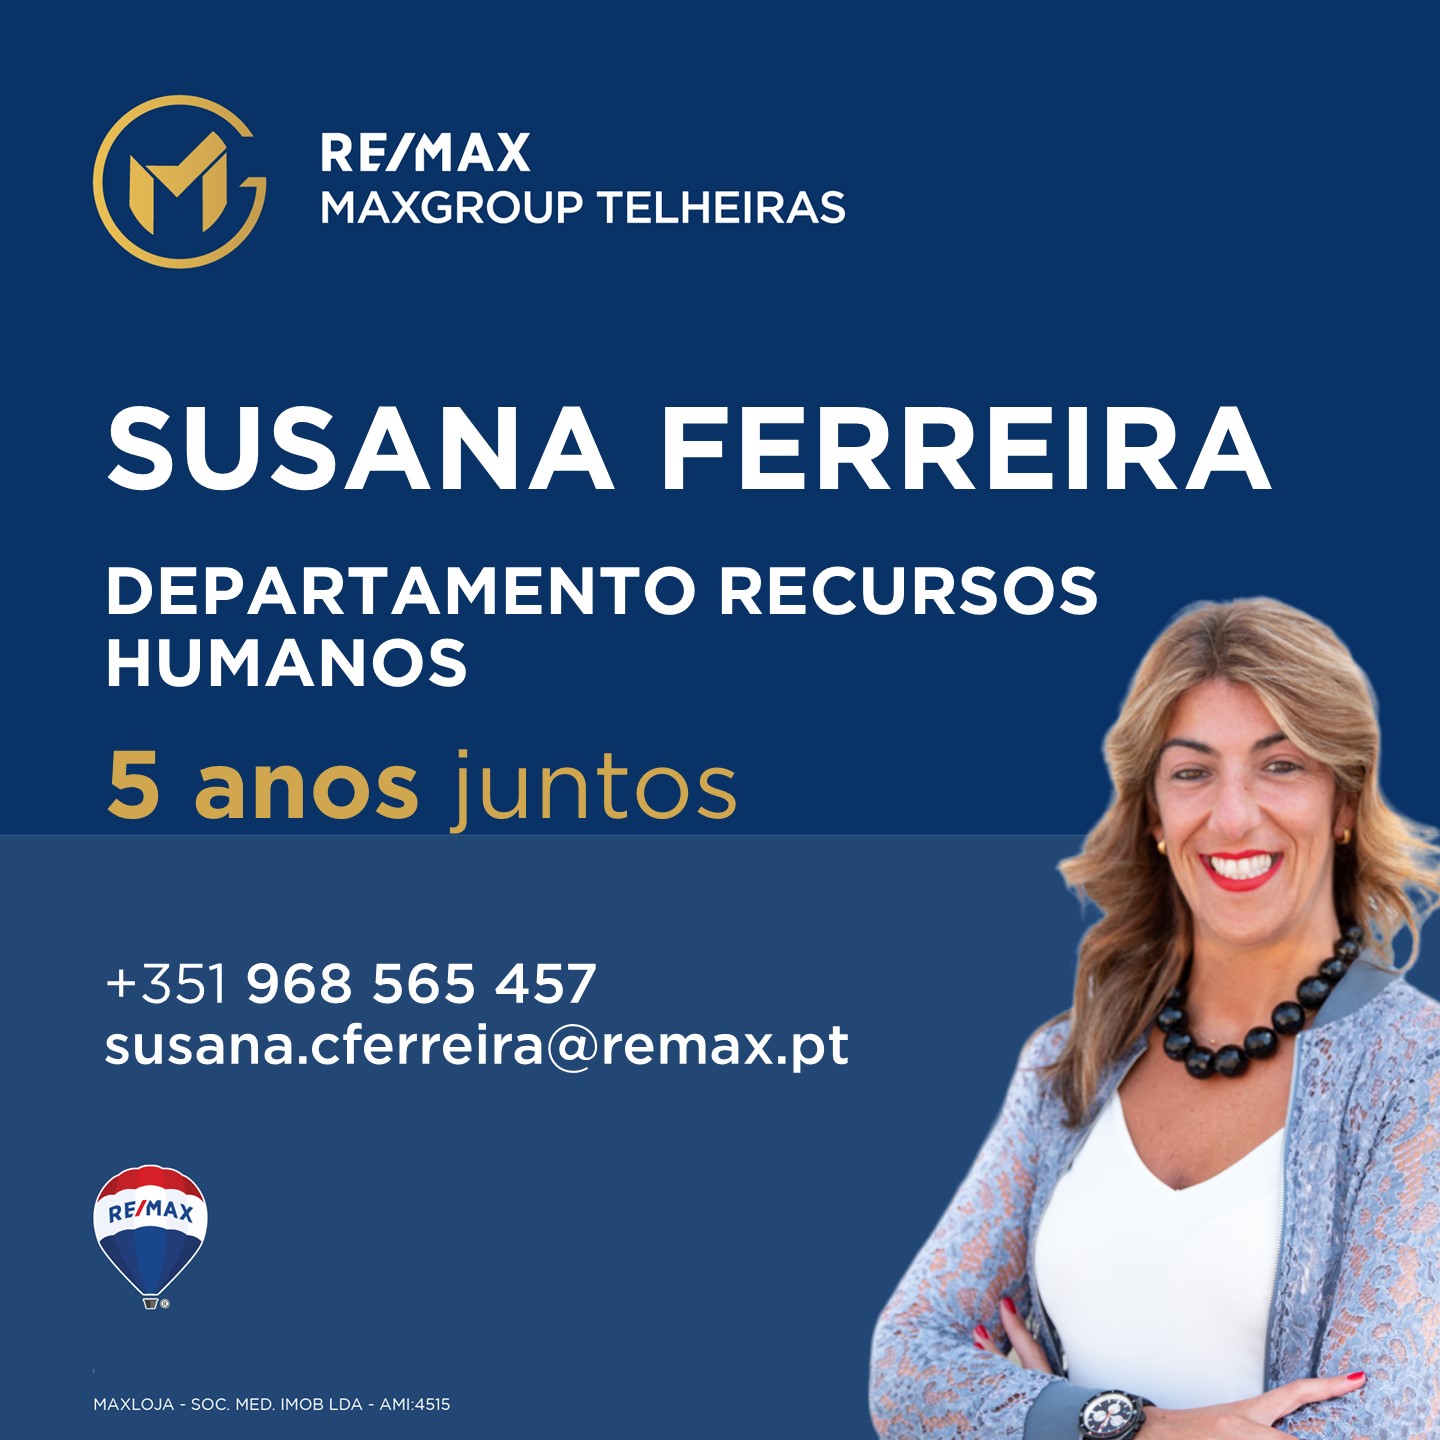 Susana Ferreira